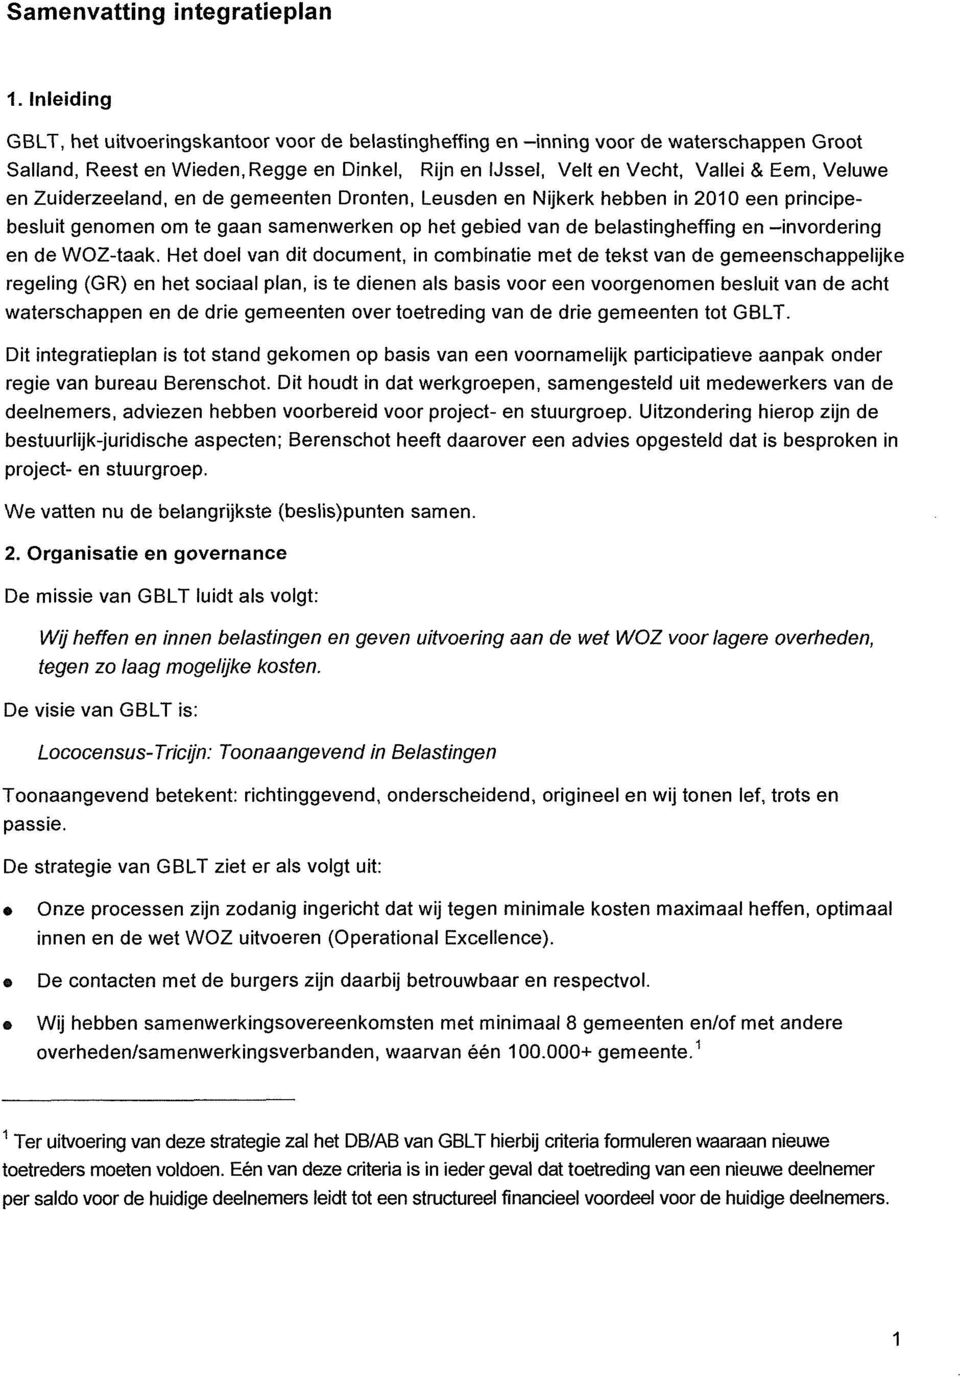 Zuiderzeeland, en de gemeenten Dronten, Leusden en Nijkerk hebben in 2010 een principebesluit genomen om te gaan samenwerken op het gebied van de belastingheffing en -invordering en de WOZ-taak.